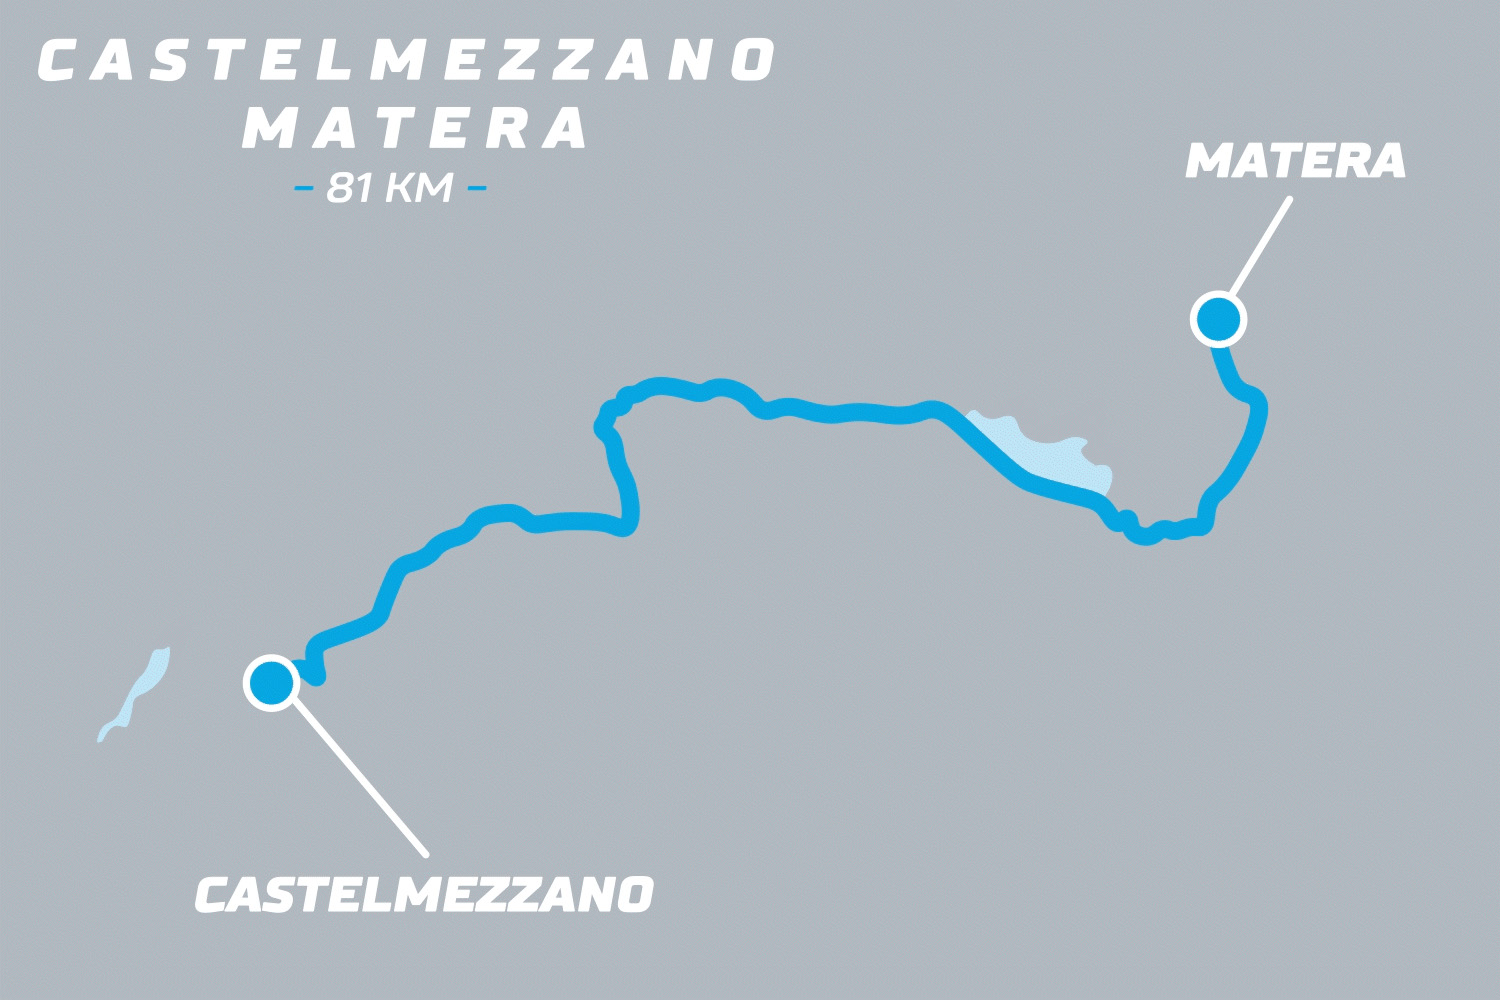 210603_Roadmap_Caatelmezzano_1_1